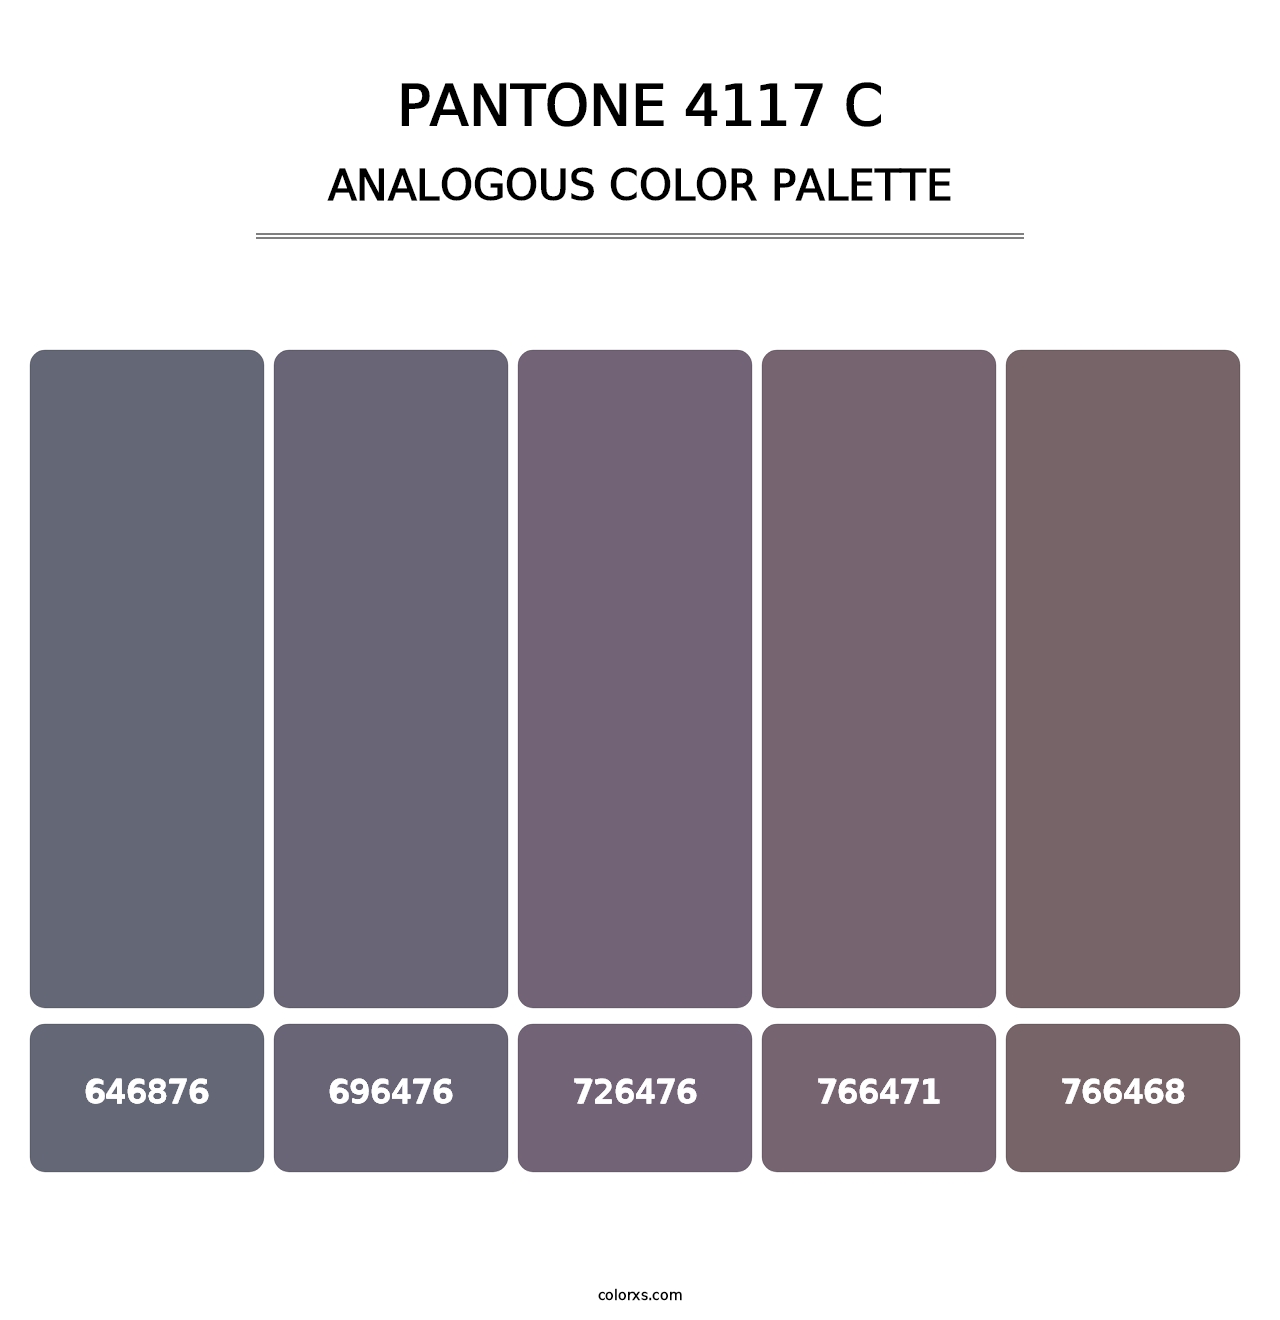 PANTONE 4117 C - Analogous Color Palette